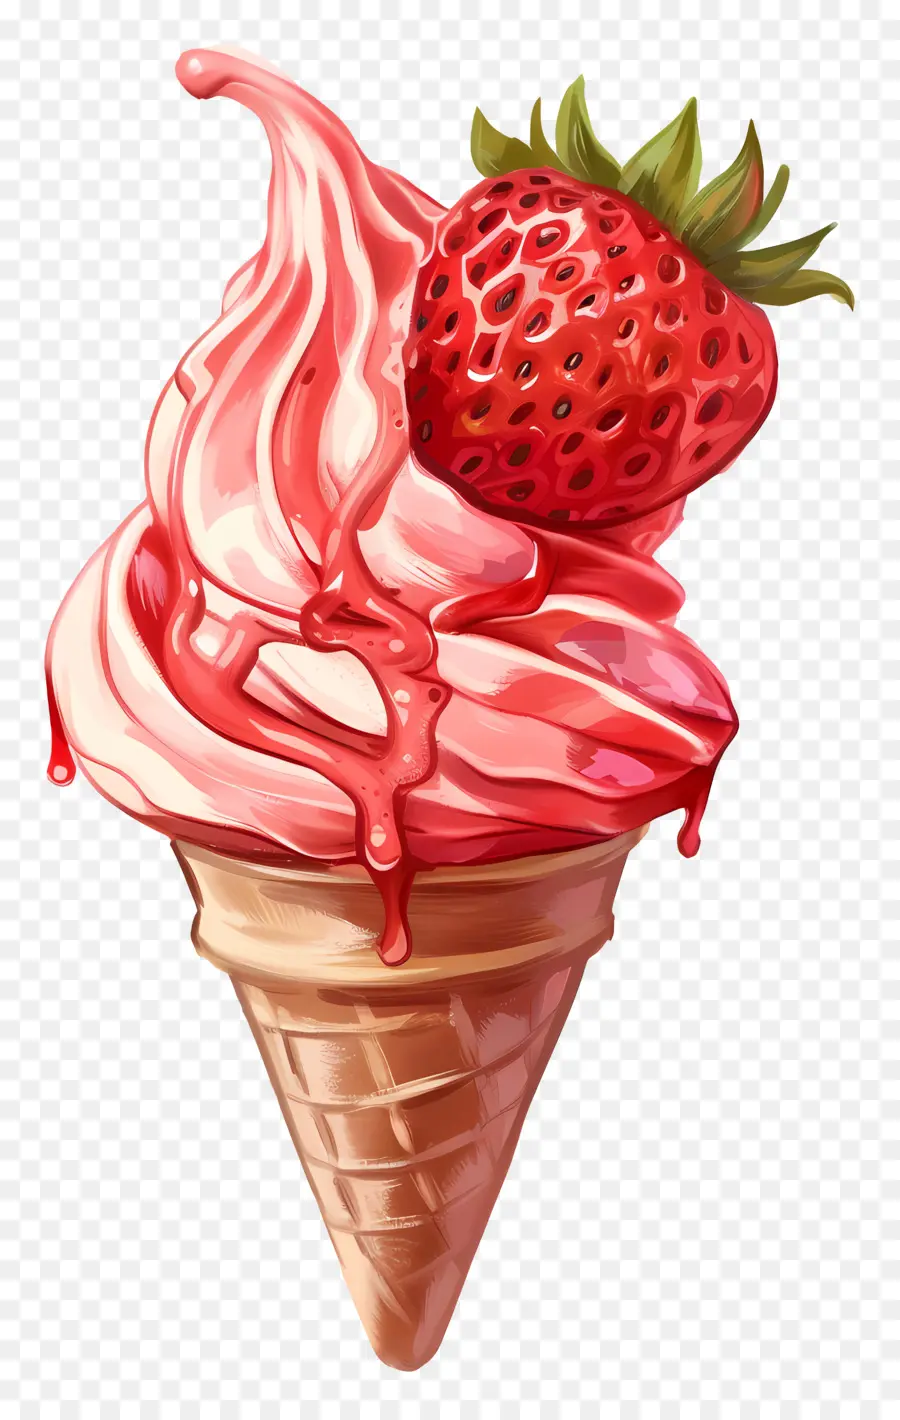 Eis Erdbeer -Erdbeer -Eis Waffelkegel rosa Eissirup - Erdbeereiskegel mit Sirup Tropfen